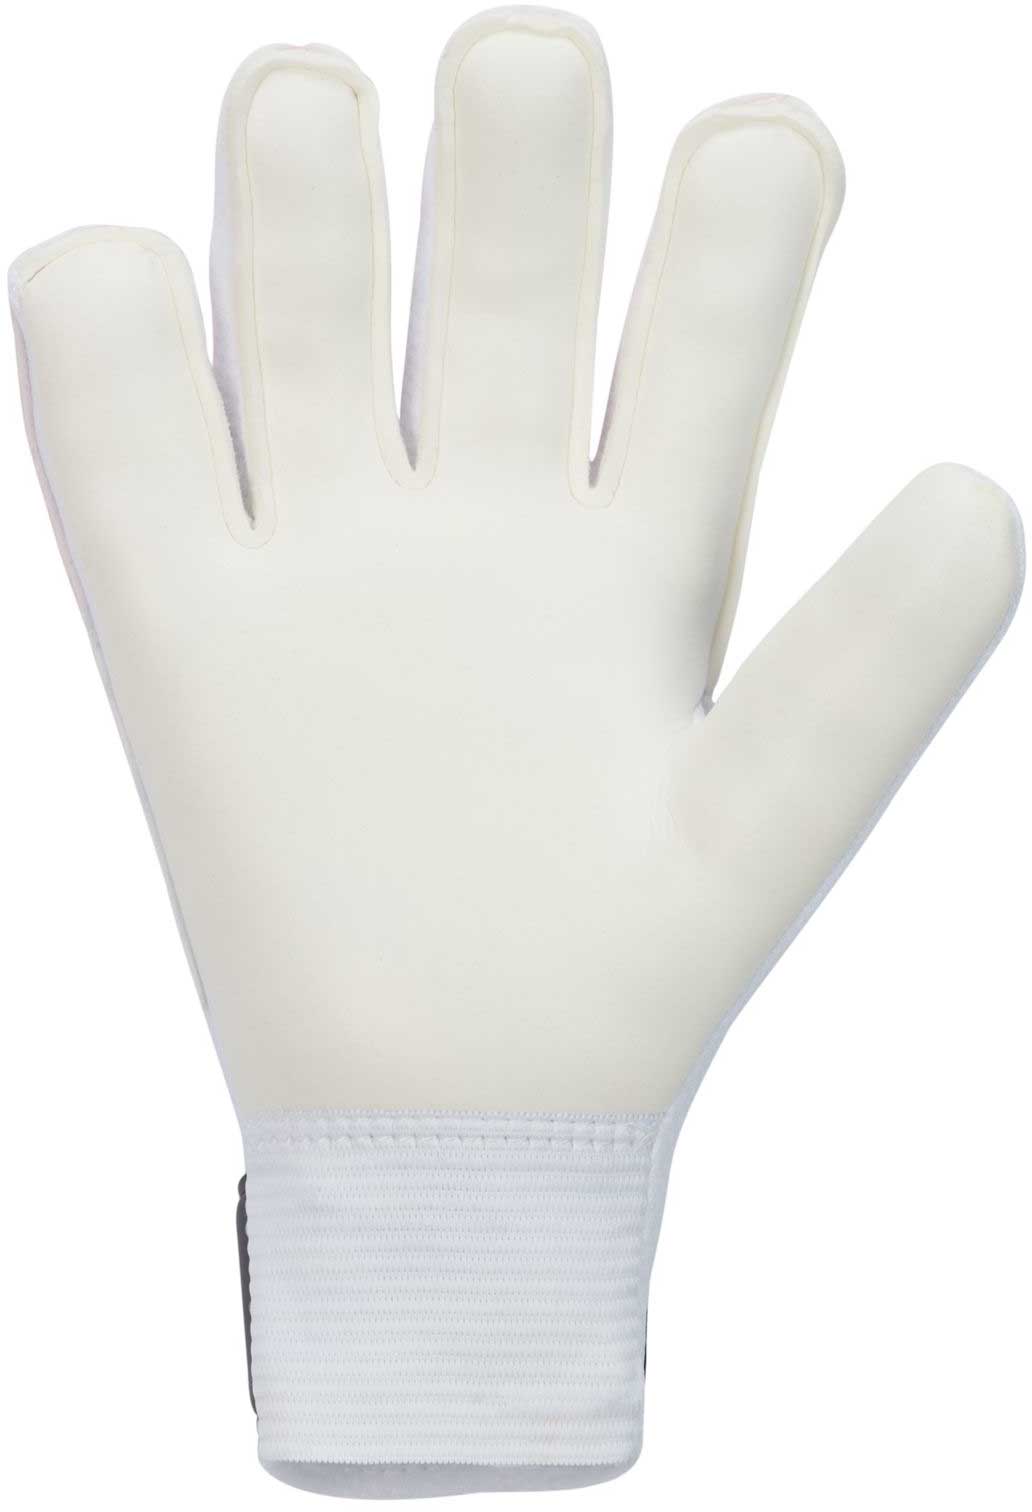 Children's goalkeeper gloves